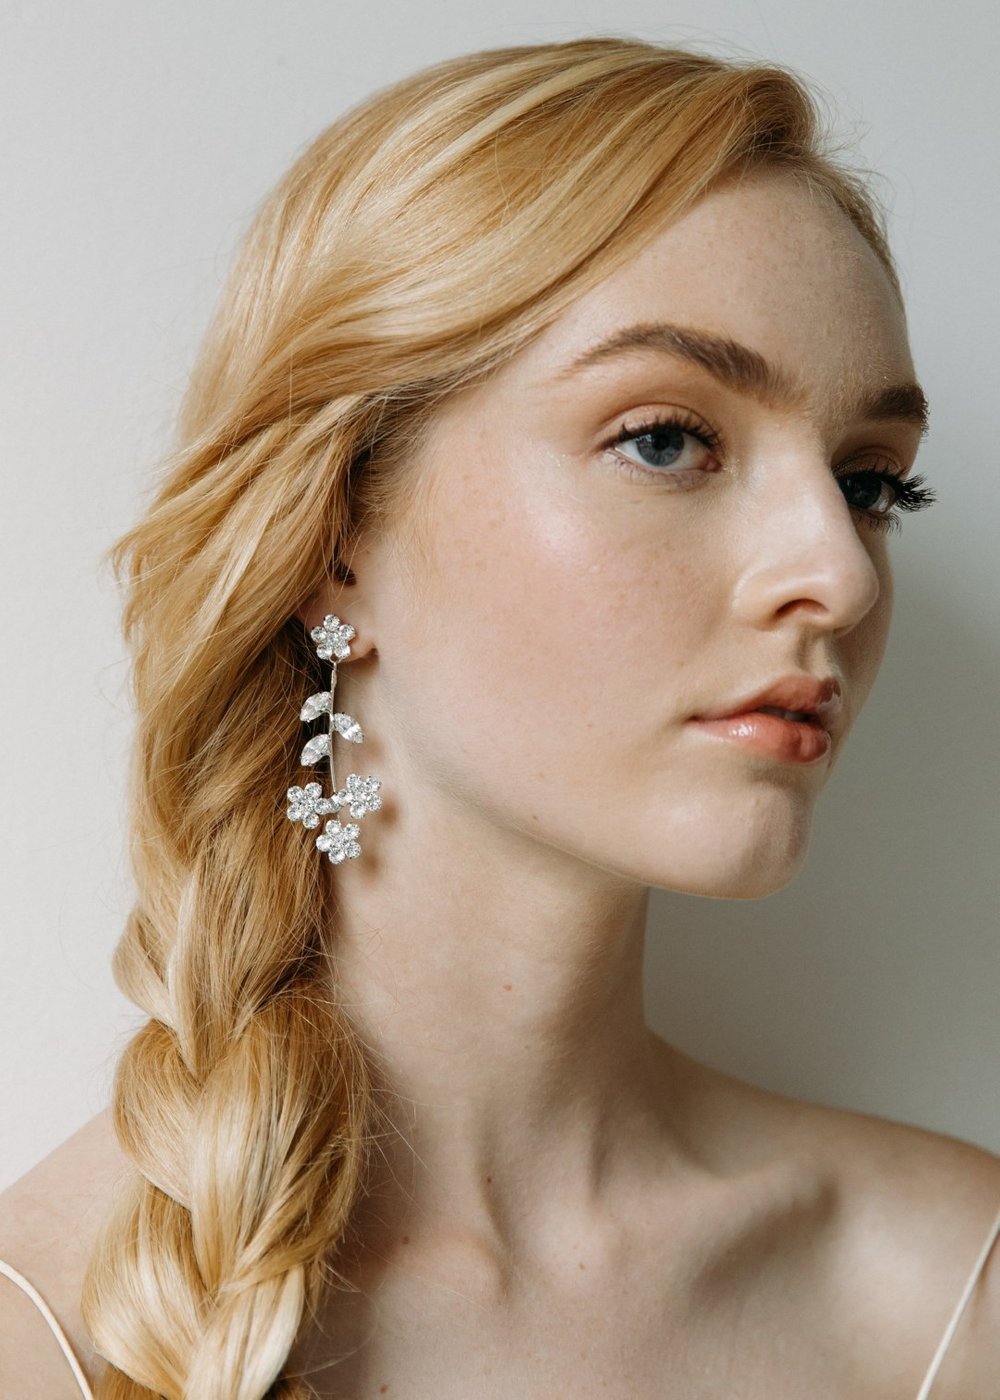 Jennifer BEHR Iris Pearl Earrings, Pearl